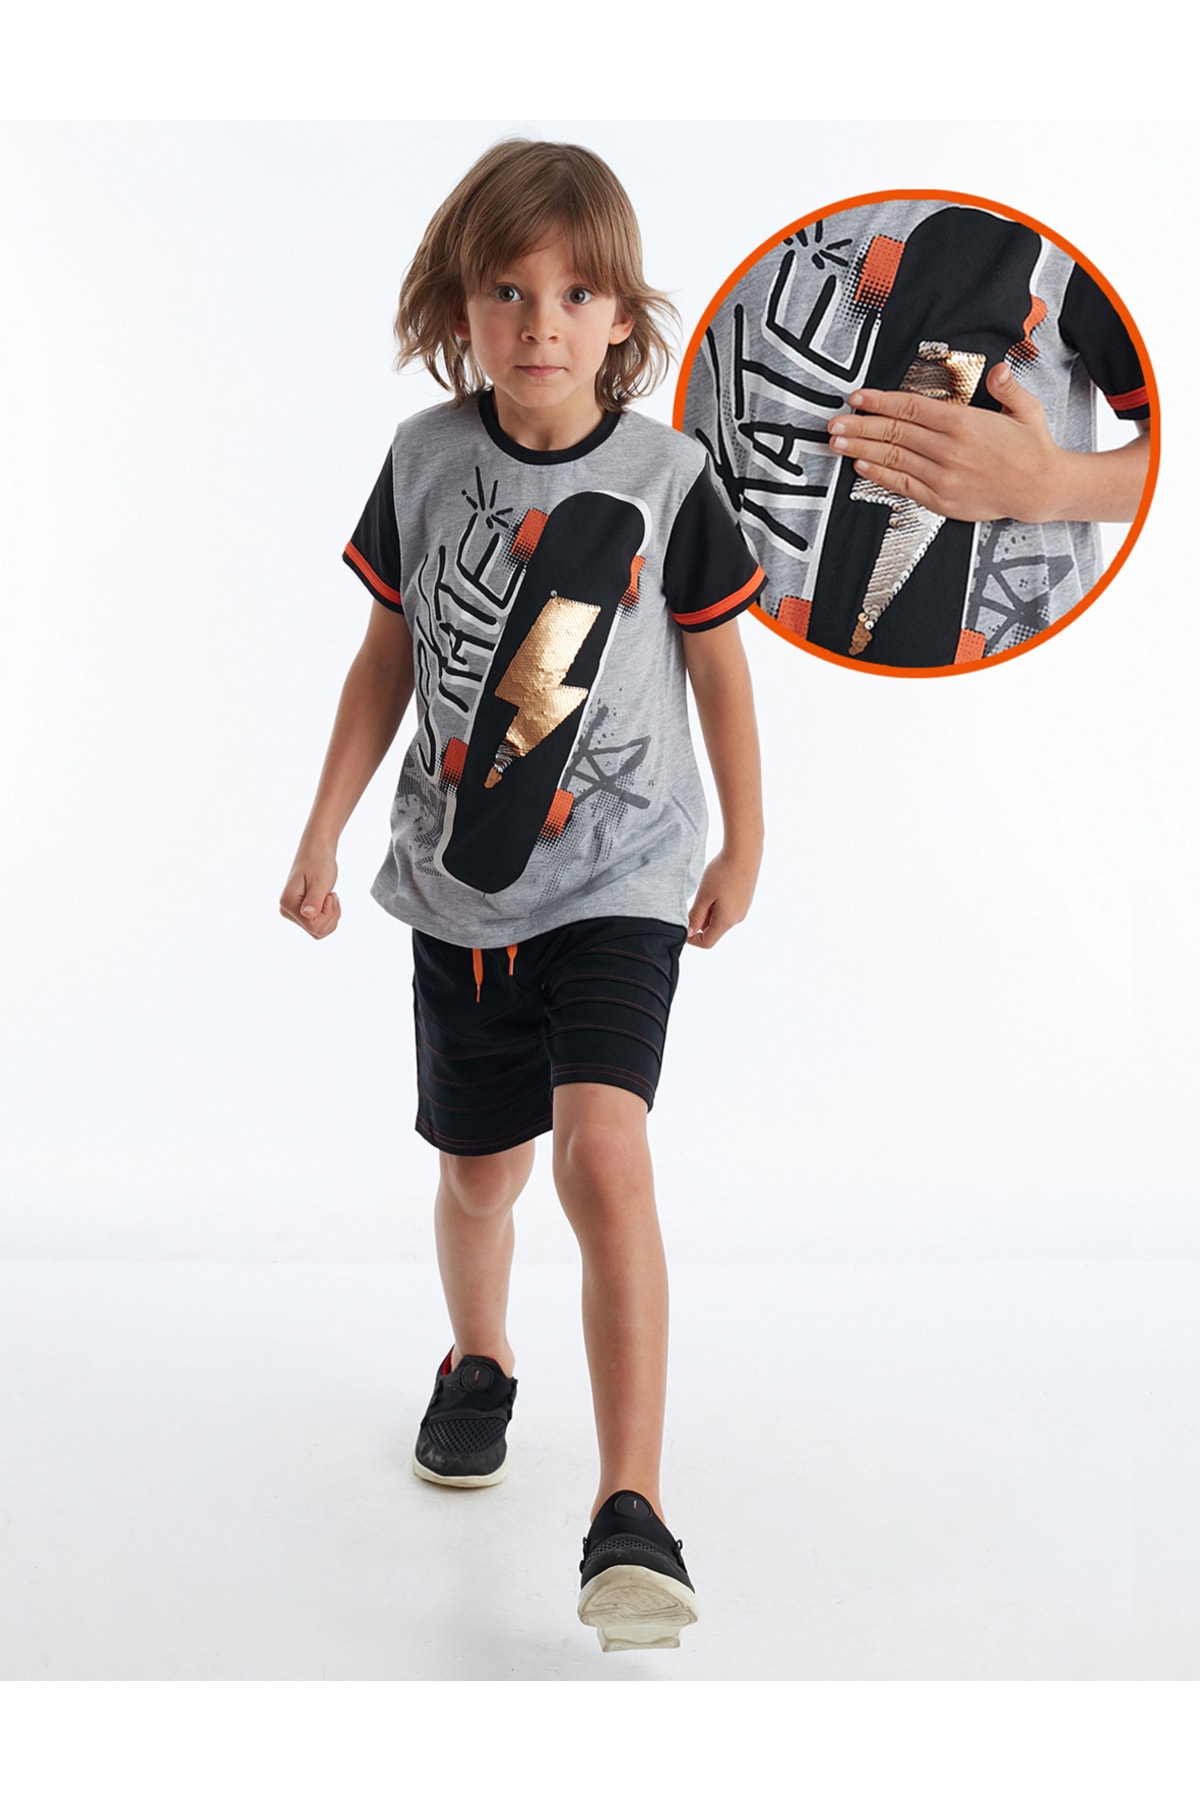 Mushi Thunder Skate Boys T-shirt Shorts Set